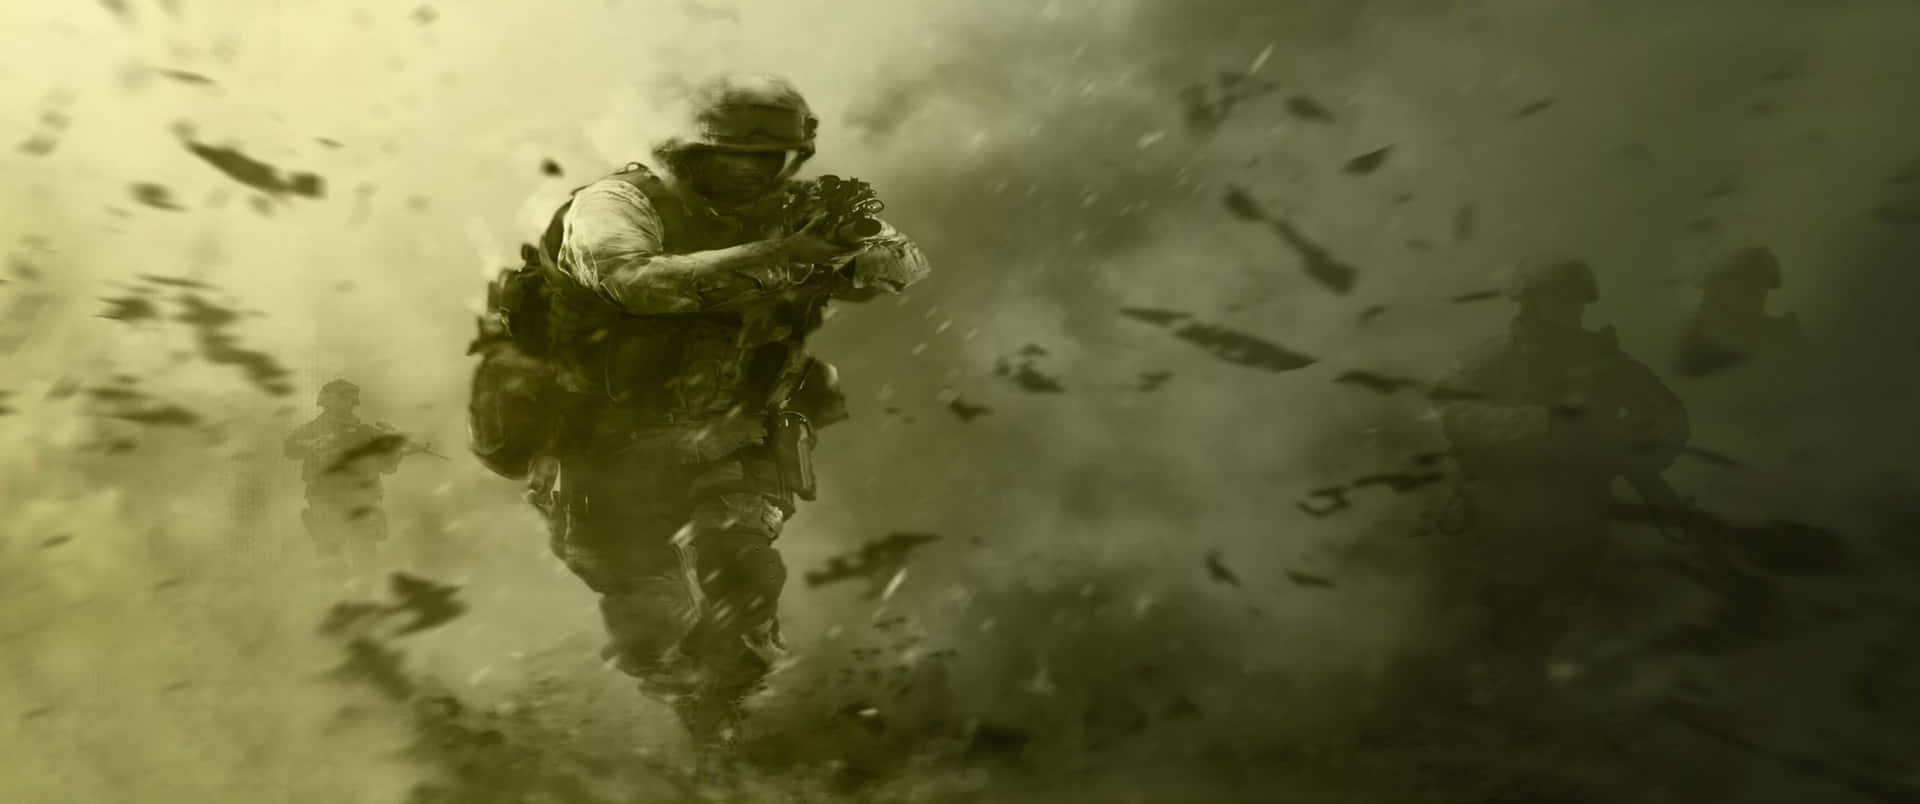 Corriendode La Explosión Fondo De Call Of Duty Modern Warfare 3440x1440p